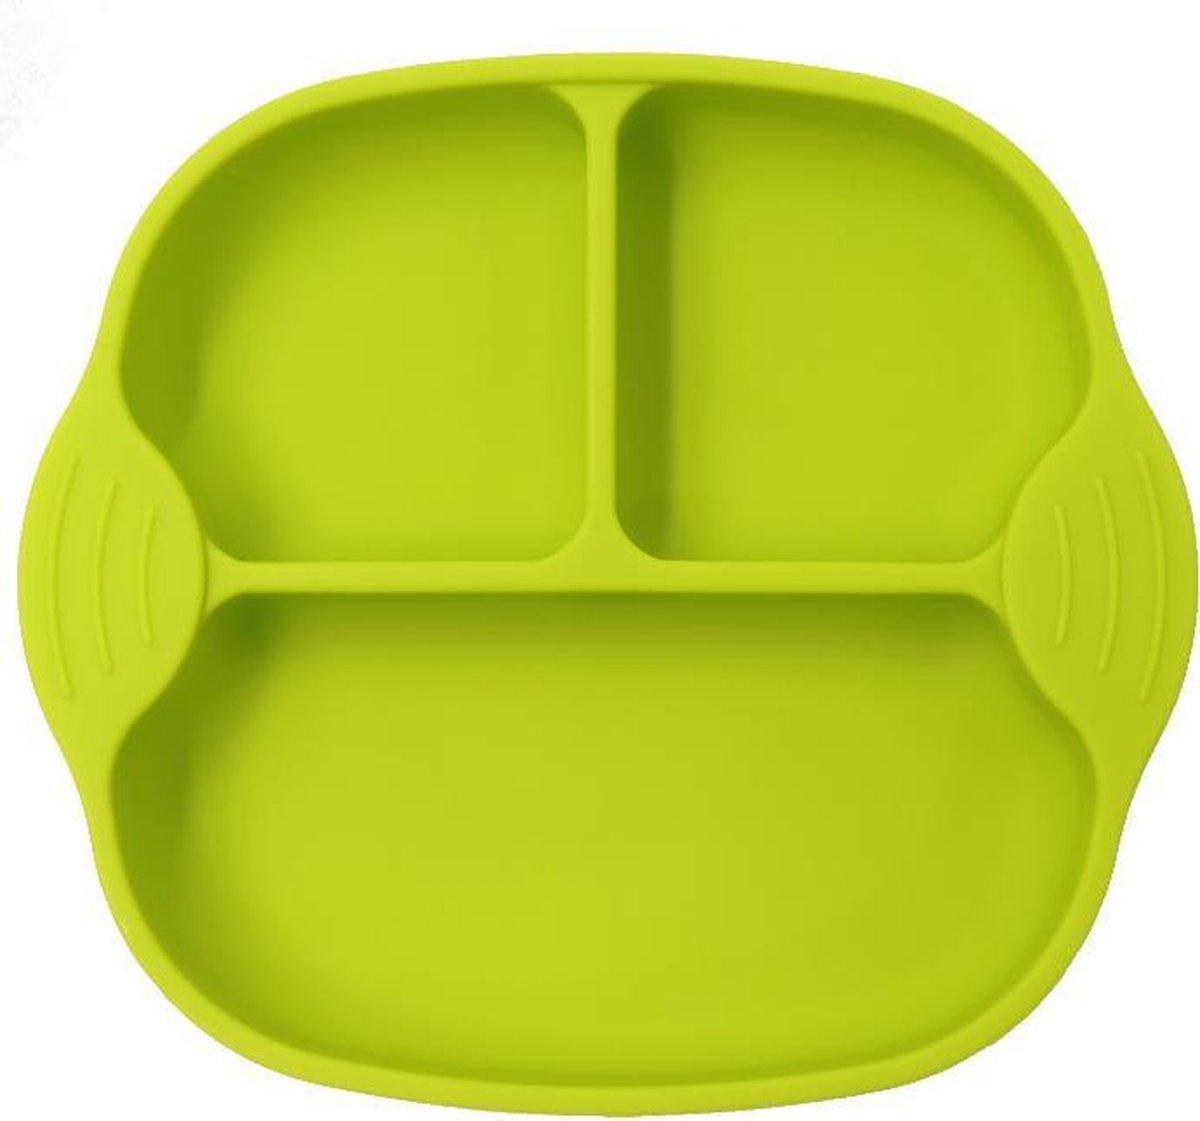 Handig siliconen bordje met vakjes en zuignap | Kinderservies |Babybordje | Kinderbordje | kleur groen | BPA en PVC vrij bord